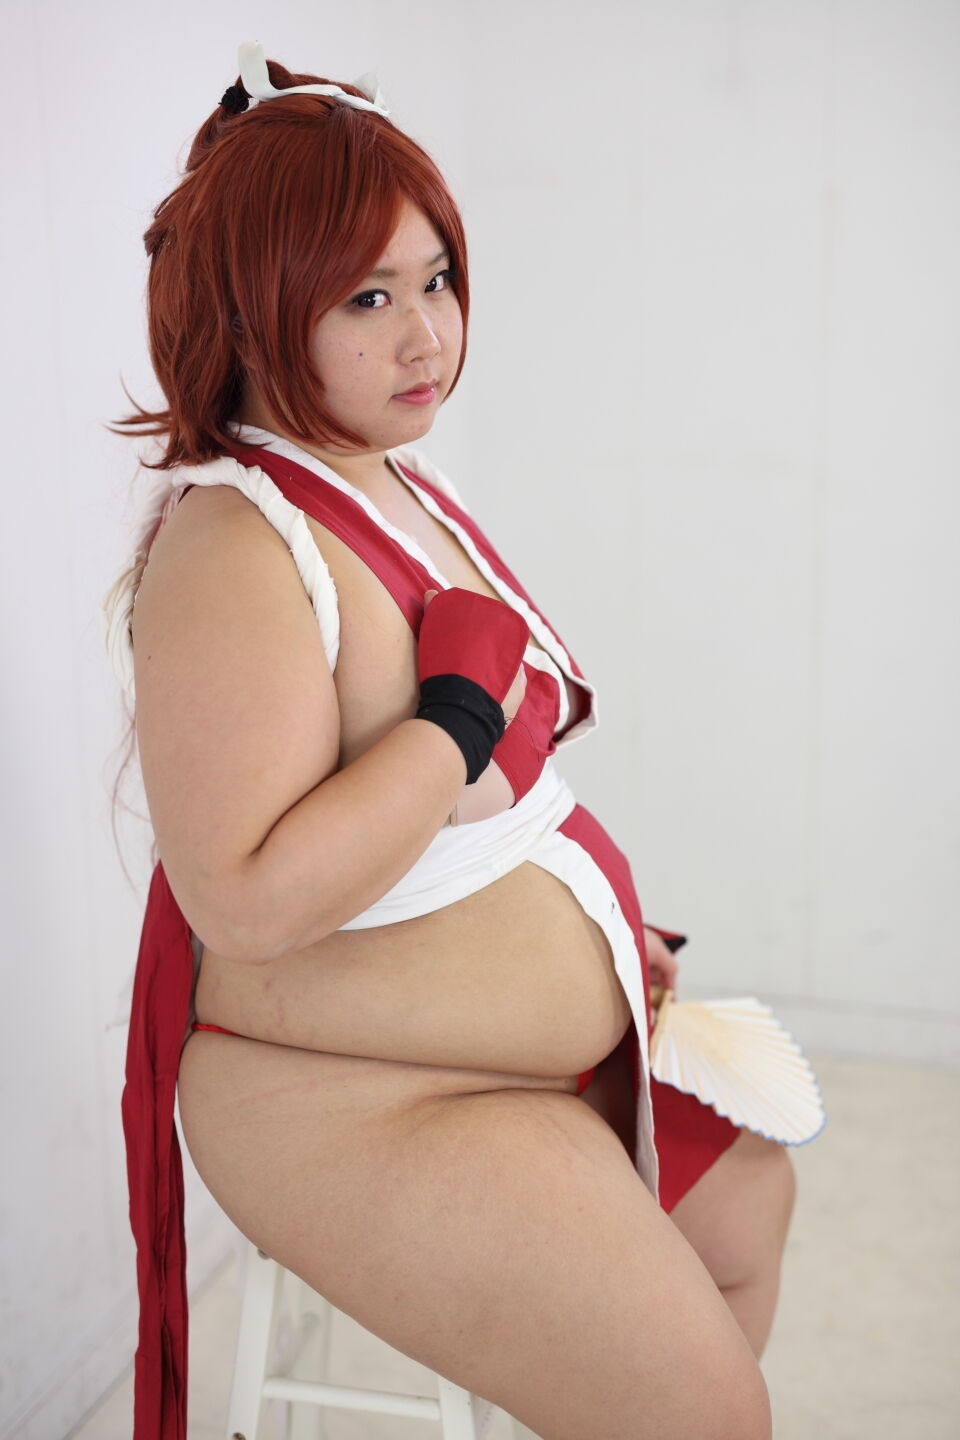 (渡辺さくらん) FIGHT FAT LADY (Sakuran Watanabe) (Mai Shiranui - Fatal Fury) (Chun-Li - Street Fighter) 134